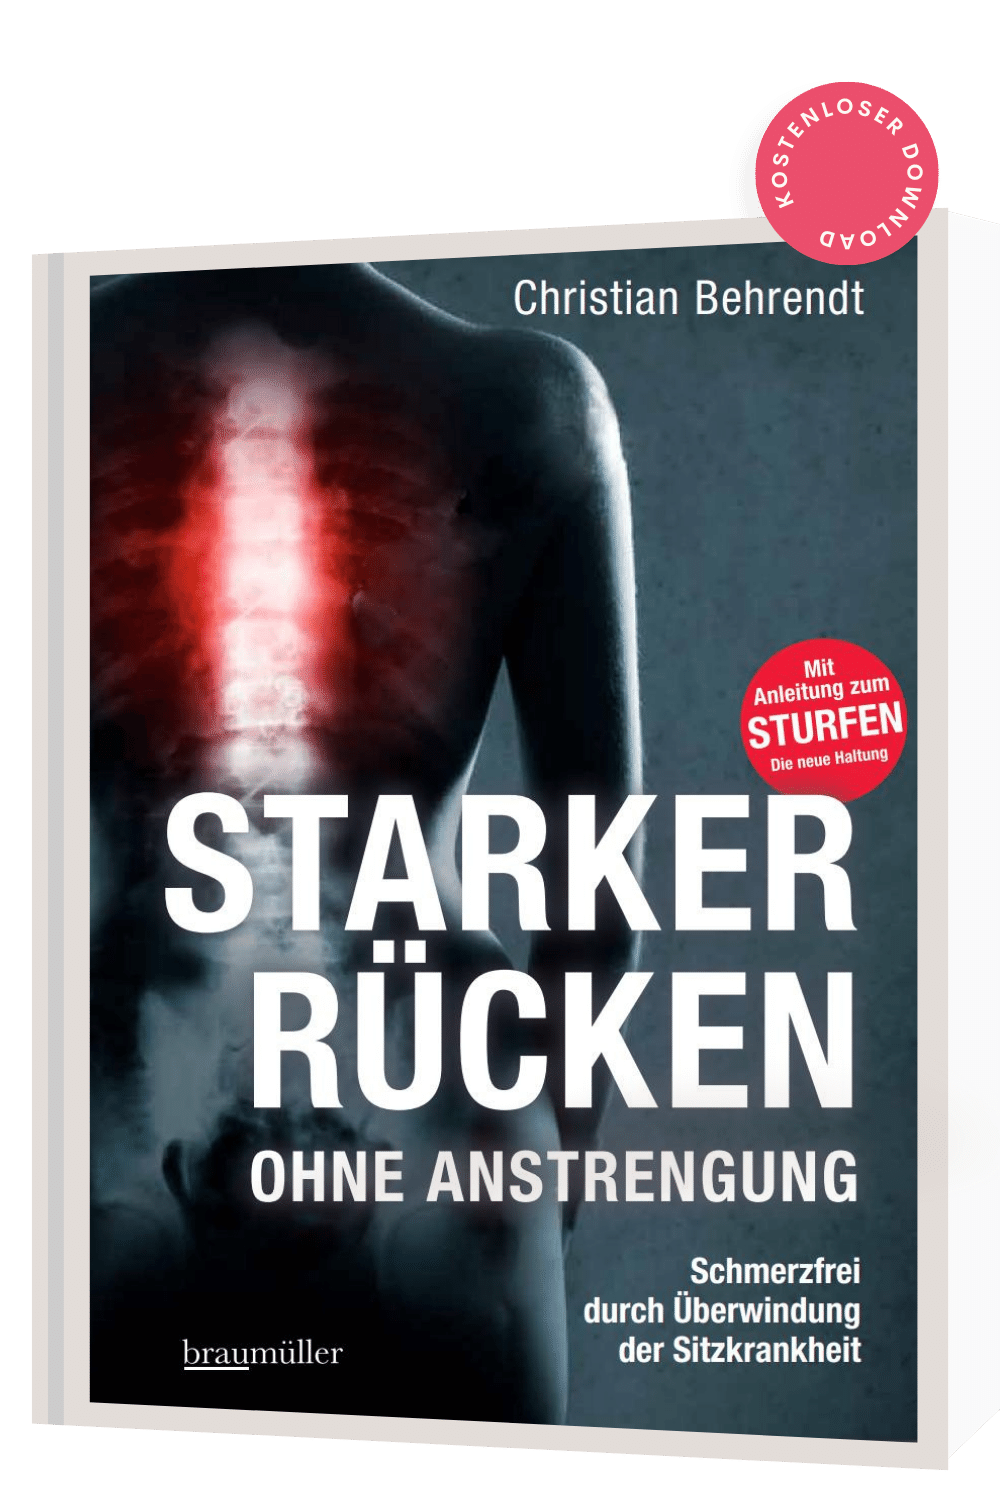 Starker Rücken Katalog, Anleitung zum Sturfer, Schmerzfrei, Sturfer